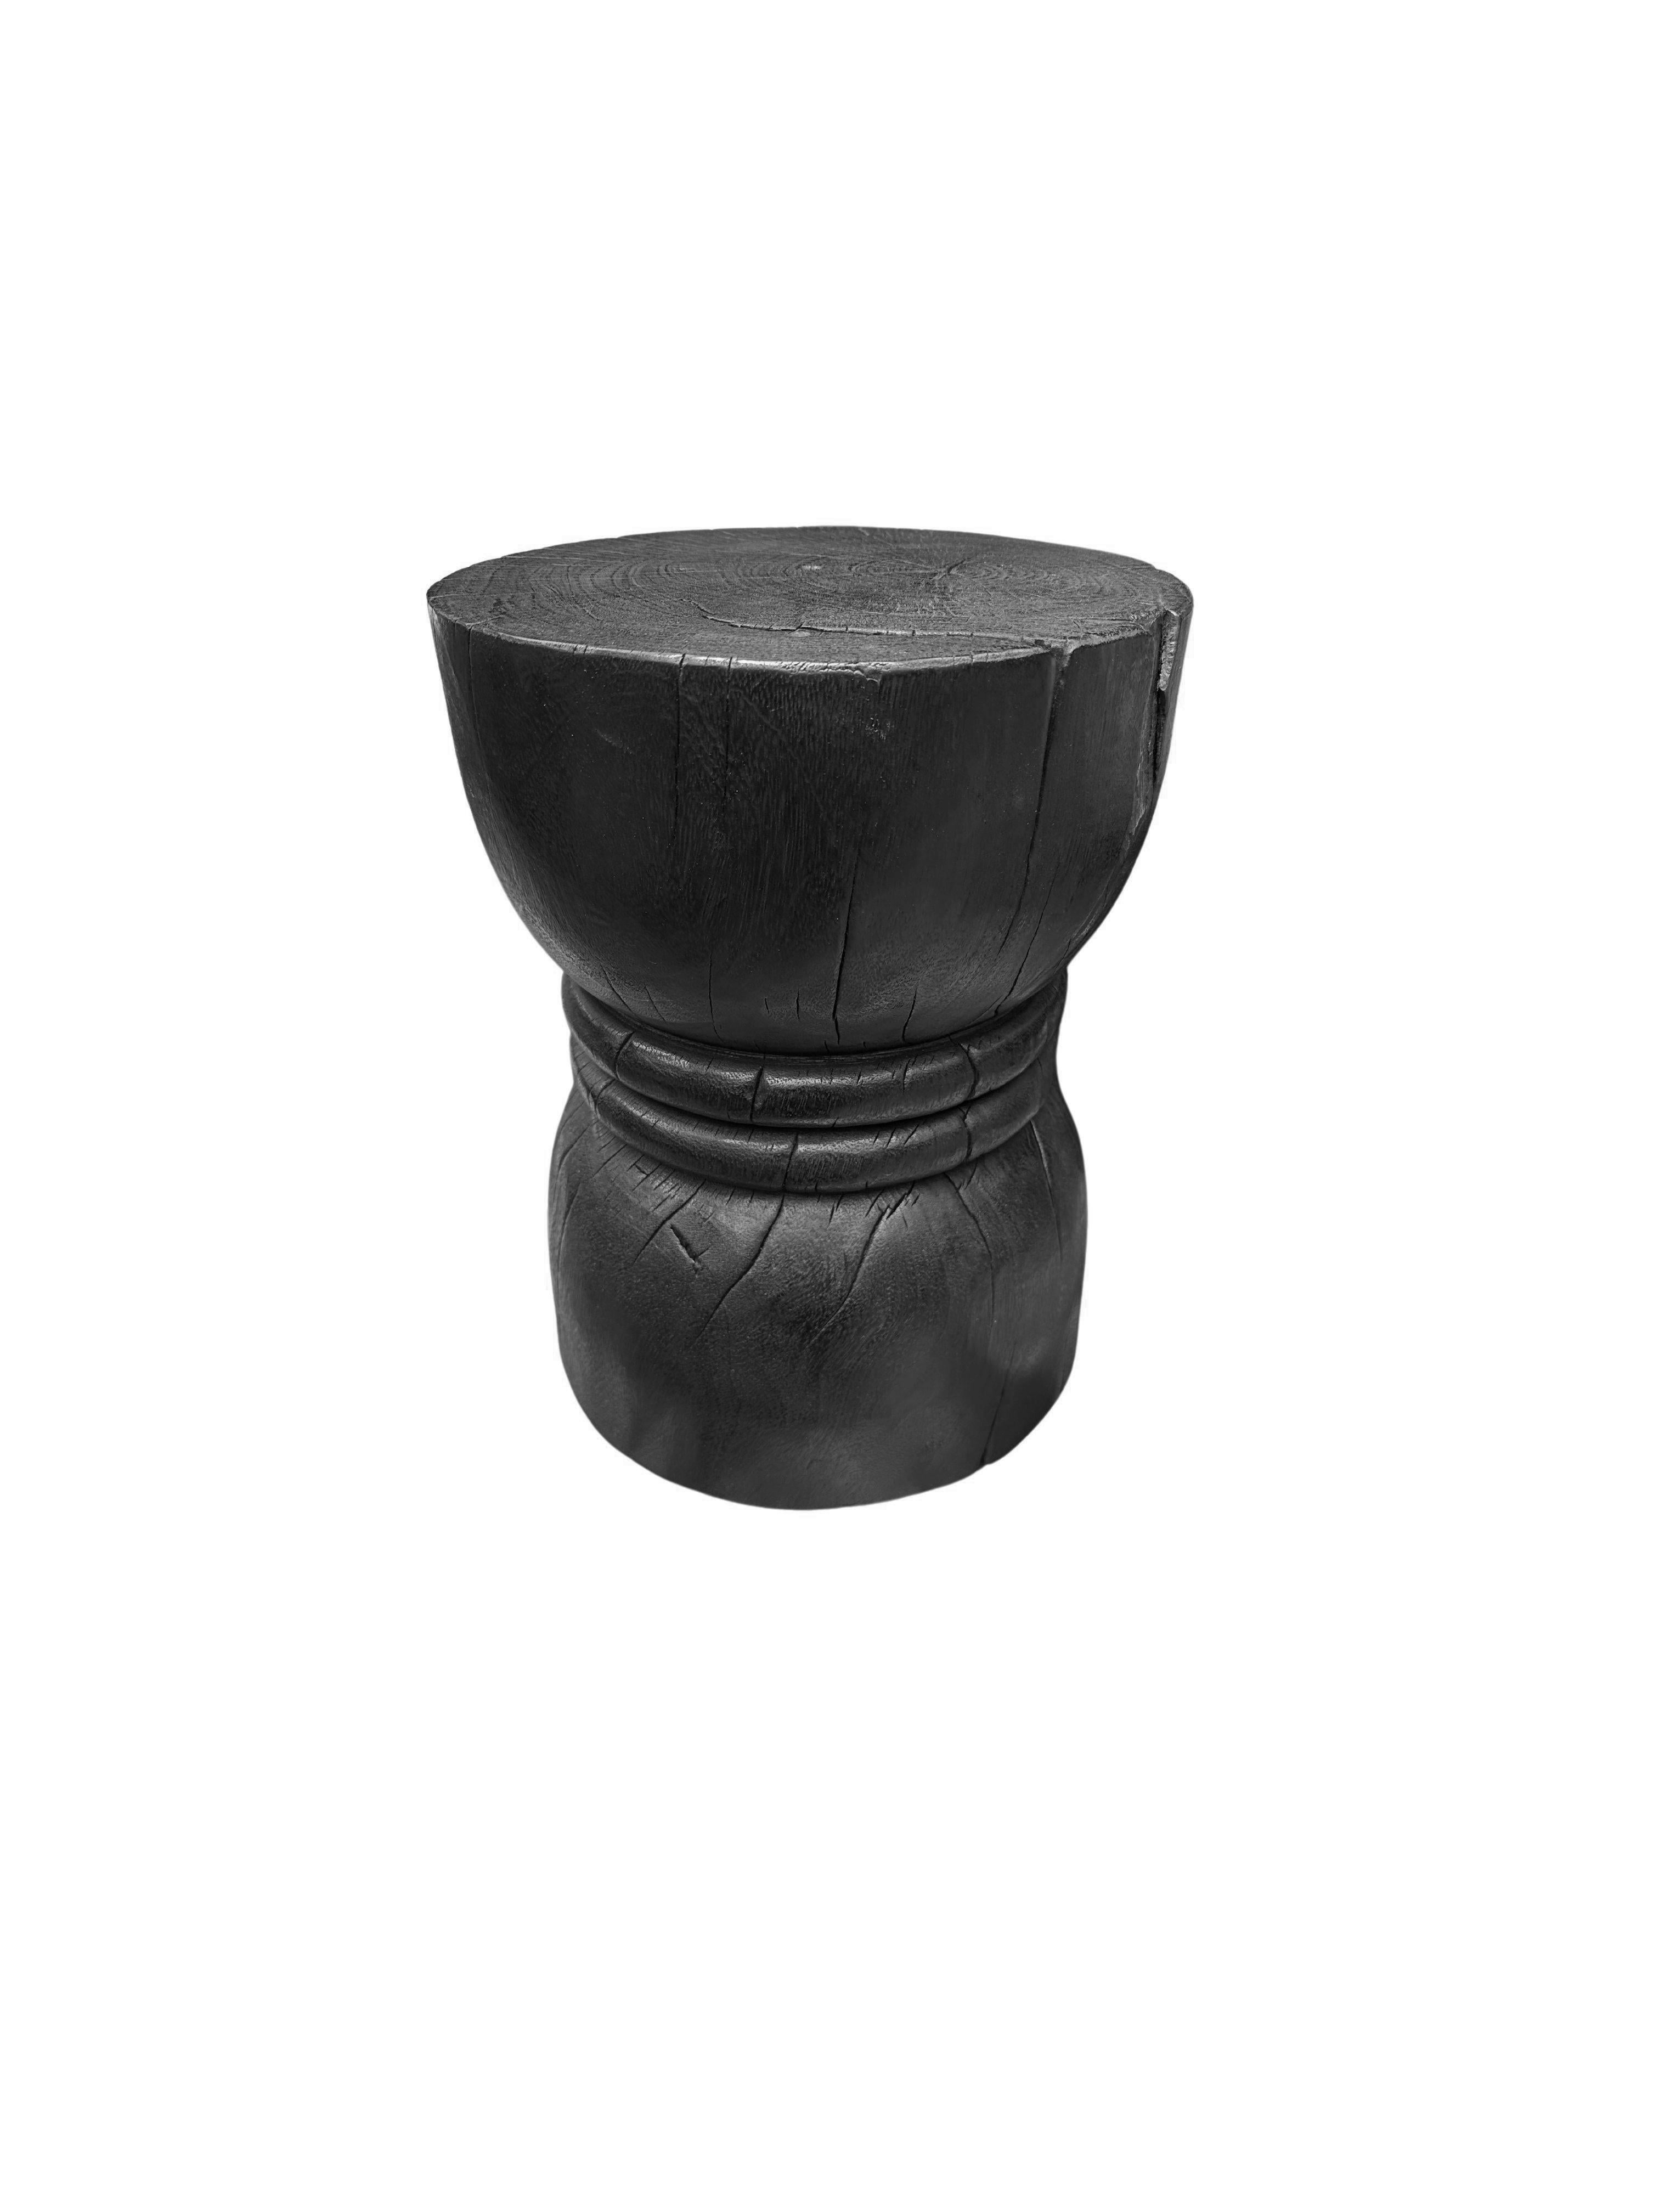 Cette table d'appoint ronde merveilleusement sculpturale est dotée d'une finition brûlée, qui donne au bois une teinte noire très prononcée. L'extérieur a été brûlé à de nombreuses reprises et recouvert d'une couche de vernis. Le pigment neutre de